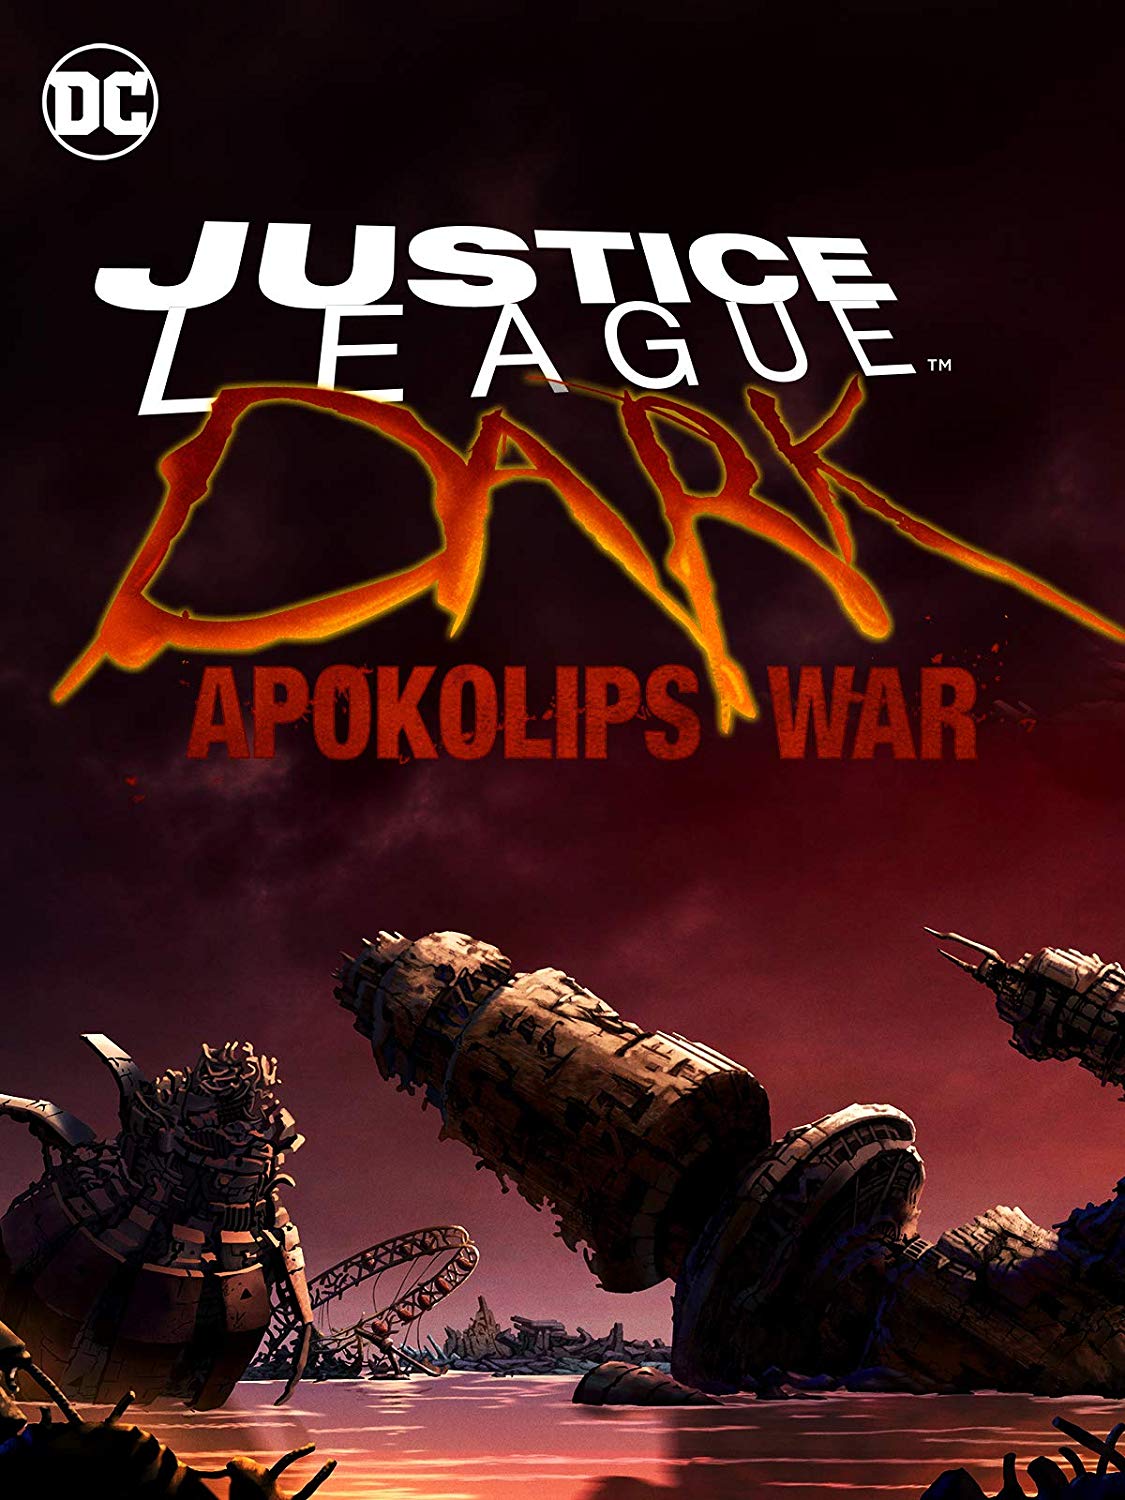 Justice League Dark: Apokolips War” Animated Movie Cast Announced ...